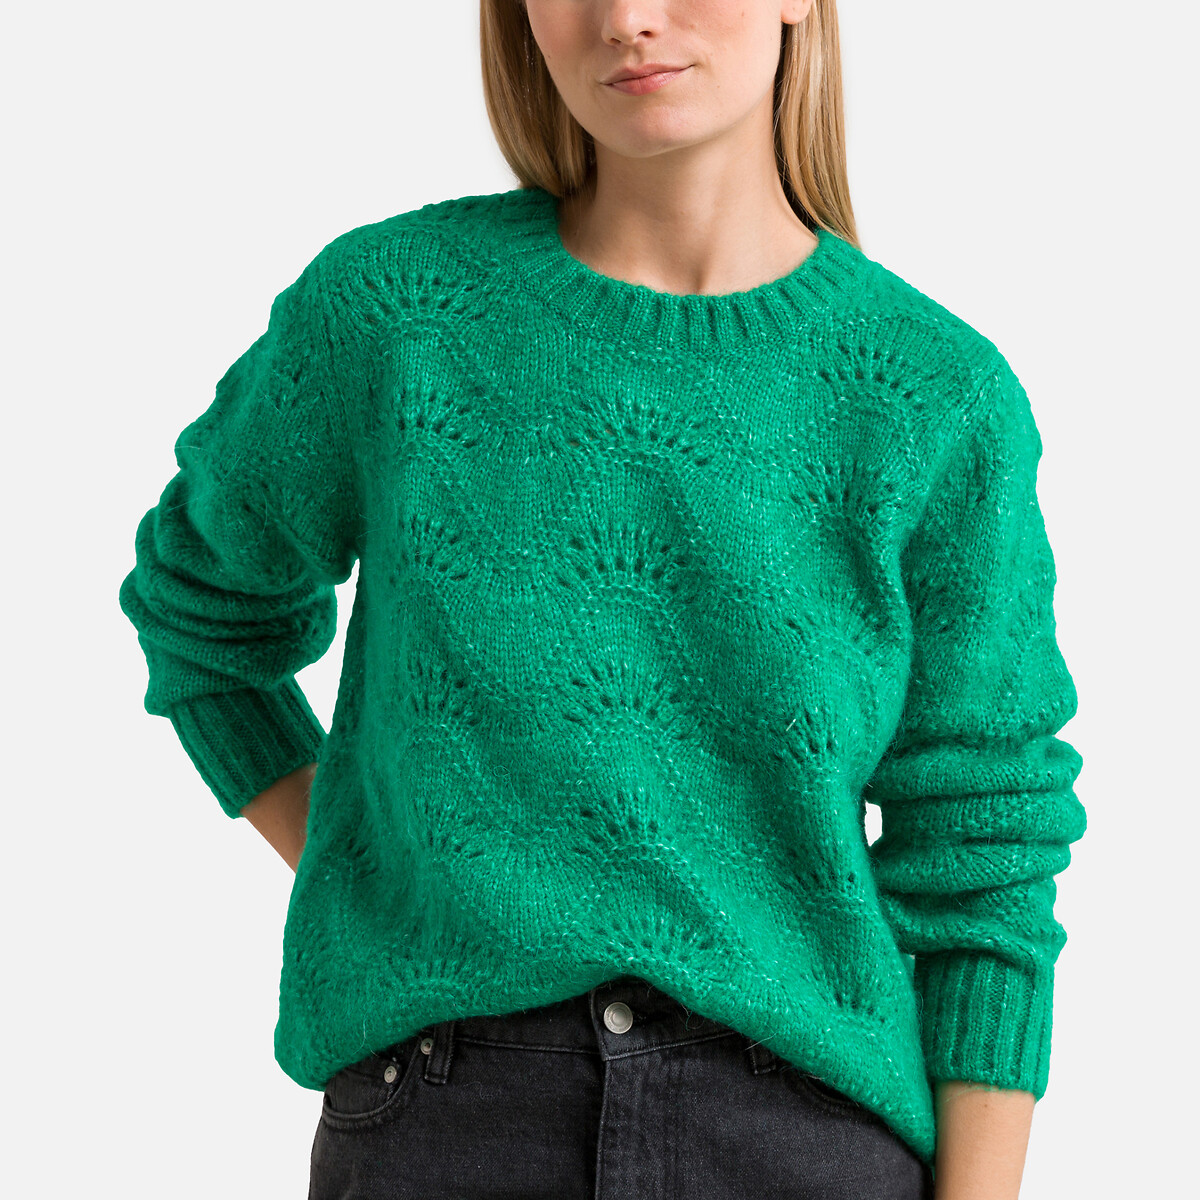 Пуловер с круглым вырезом из ажурного трикотажа S зеленый пуловер с круглым вырезом из трикотажа крупной вязки hanapark s черный